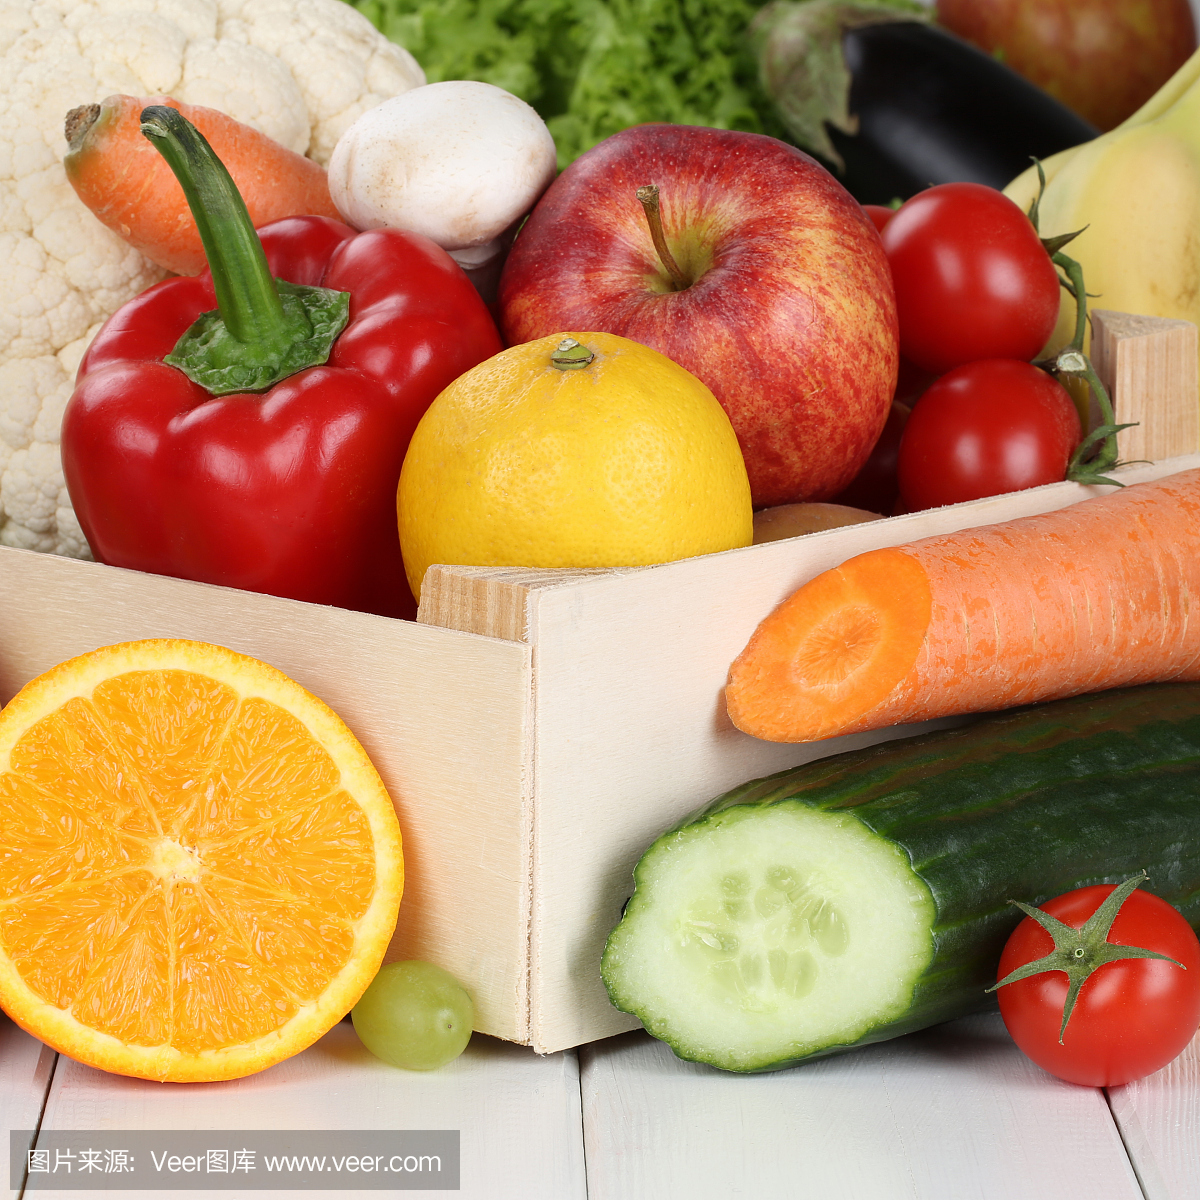 水果和蔬菜像桔子,苹果,西红柿在盒子里